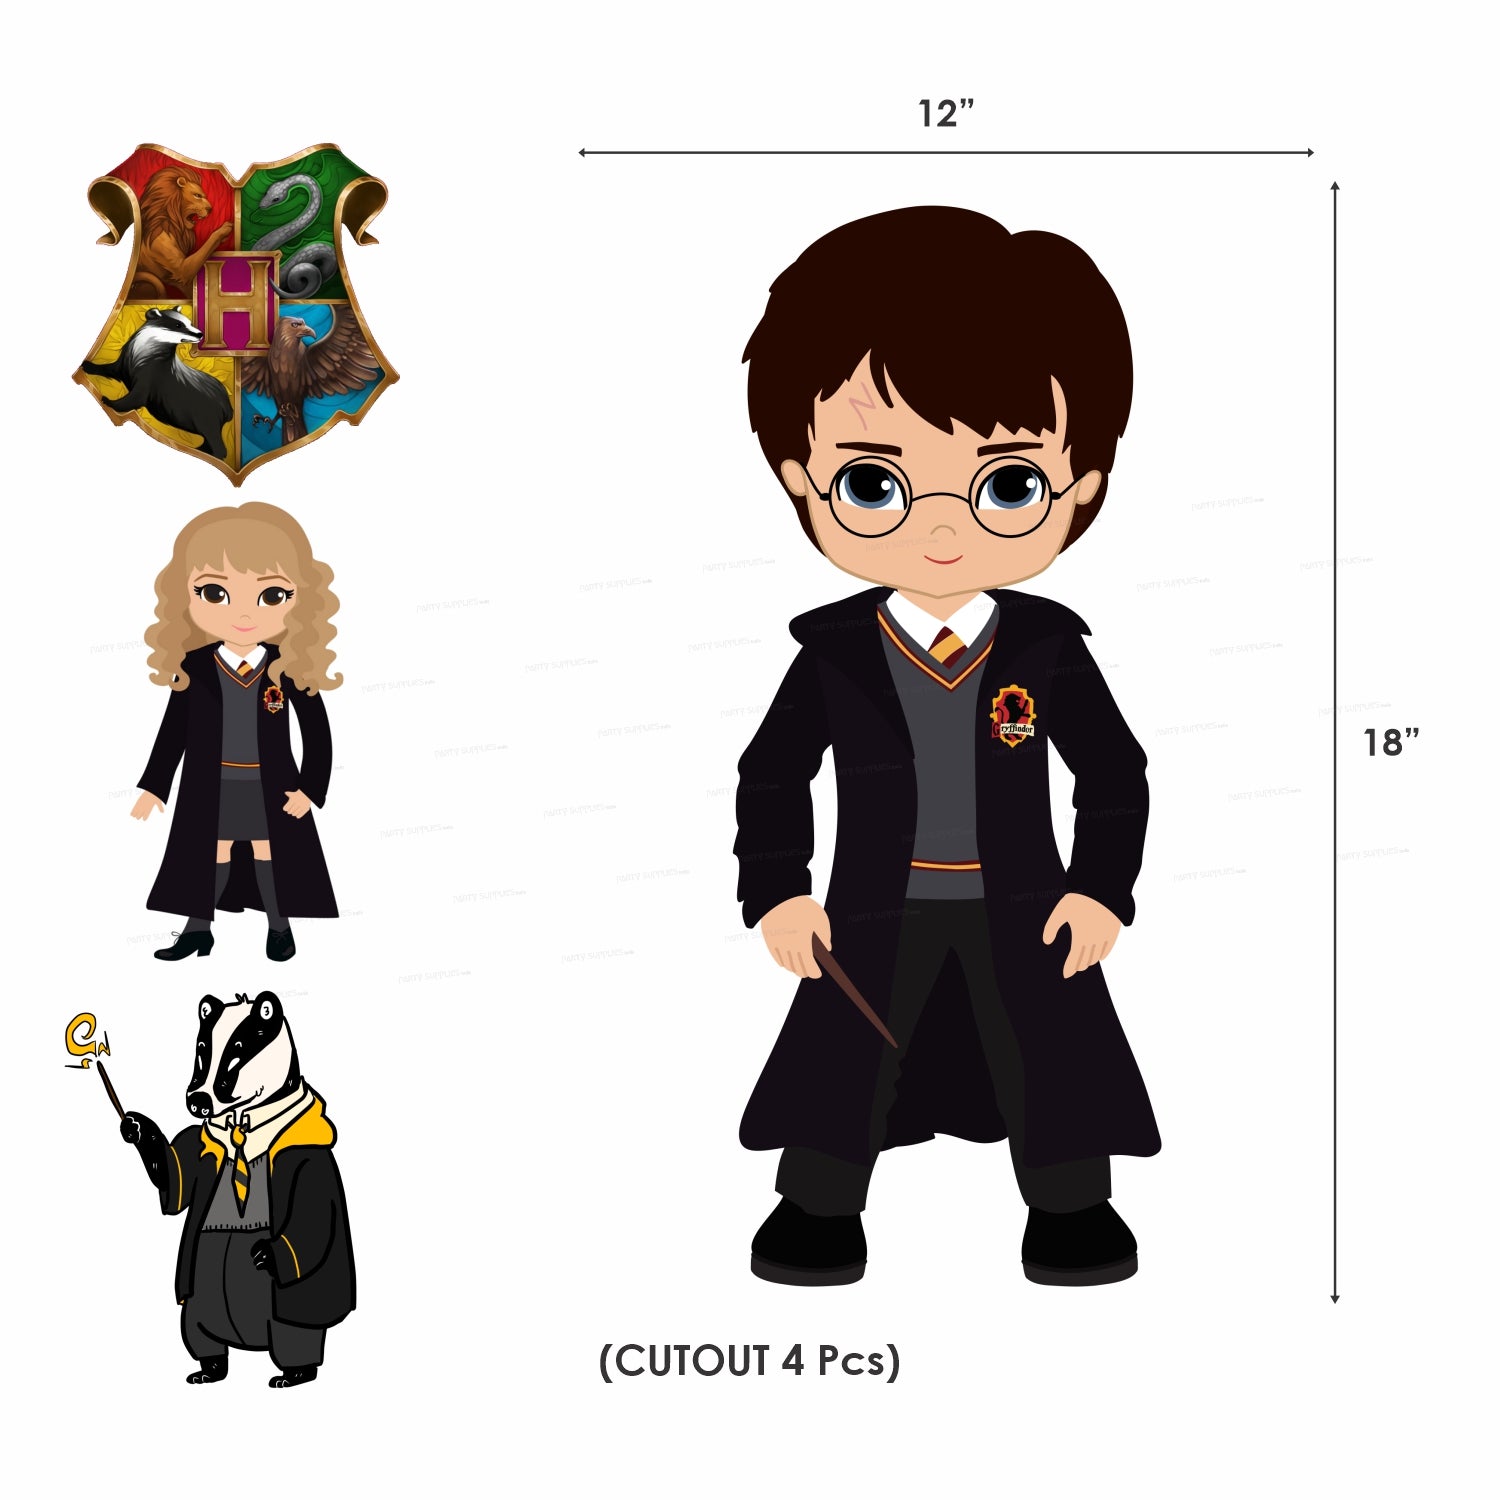 PSI Harry Potter Theme Premium Kit